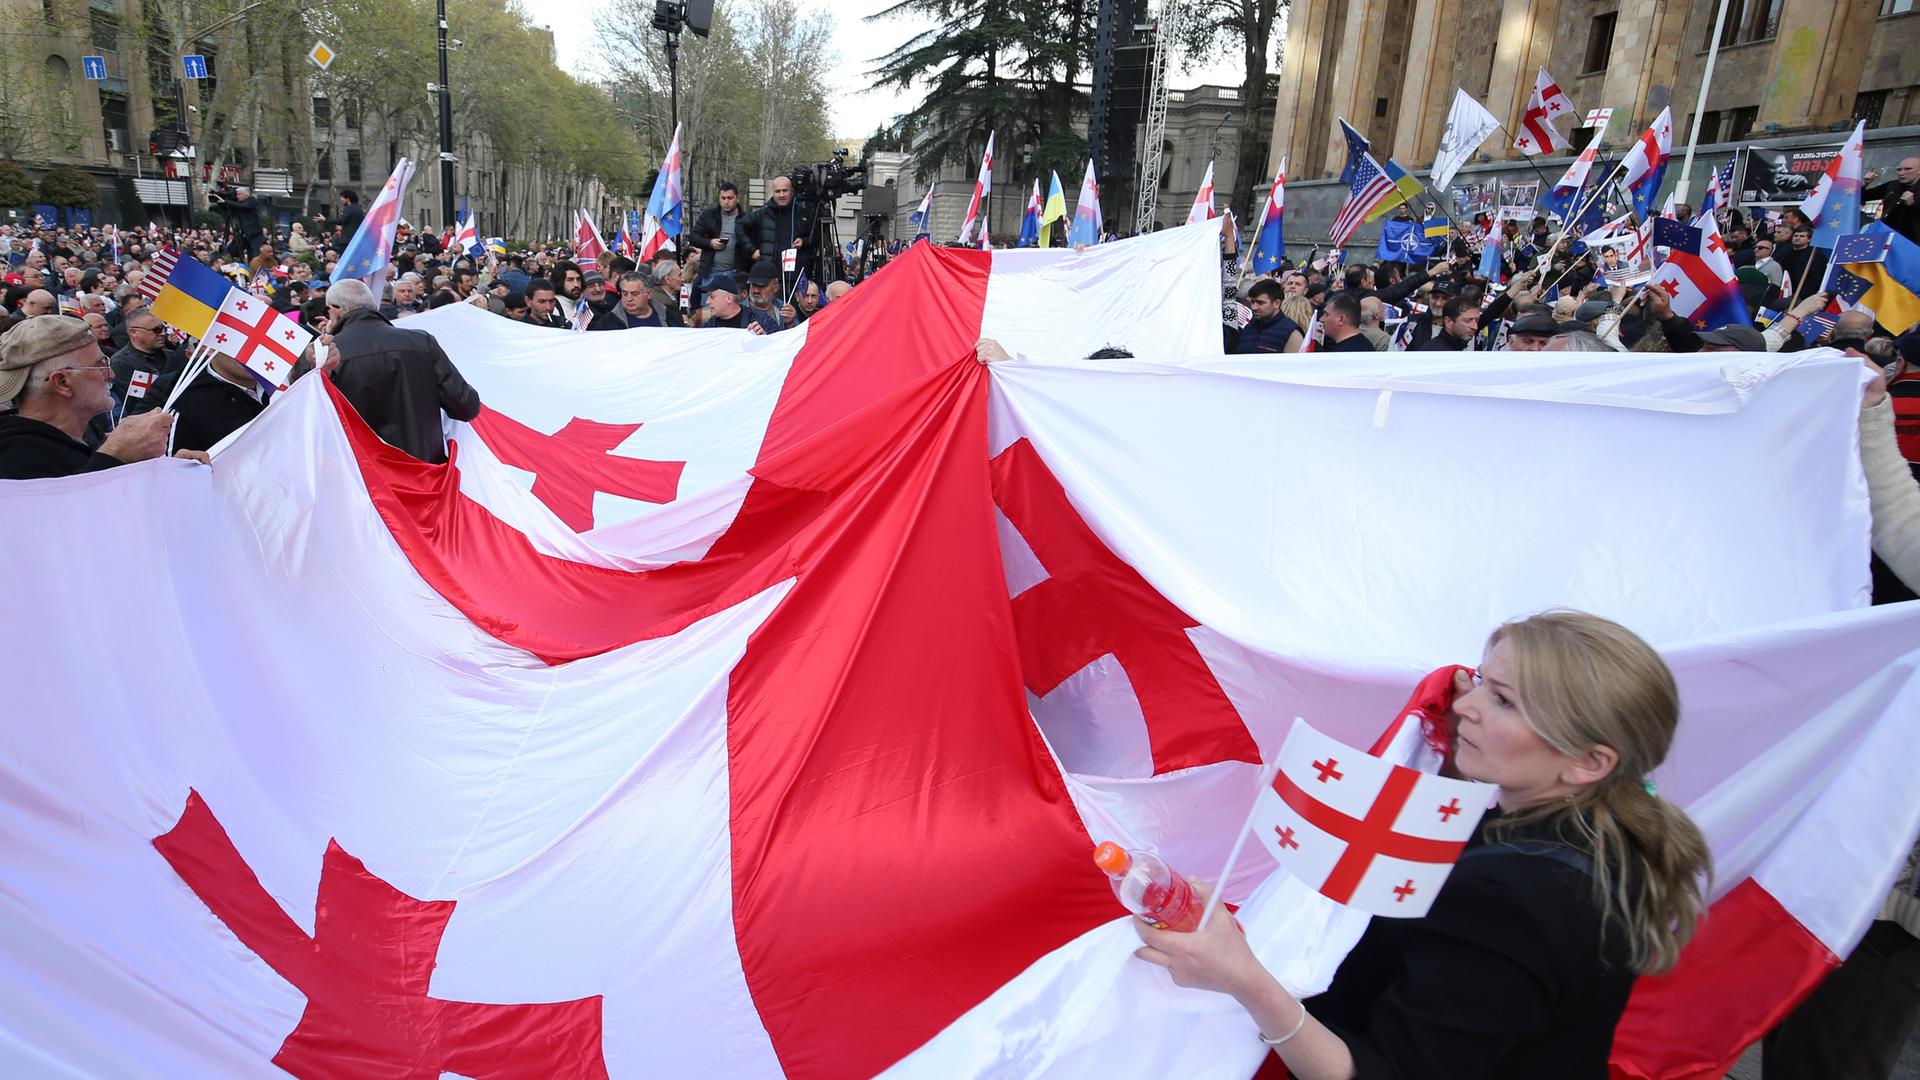 Demonstranten halten eine große georgische Fahne während eines Protests hoch. Im Hintergrund sind viele andere Protestierende zu sehen, die auch Flaggen der EU und der Ukraine hochhalten.